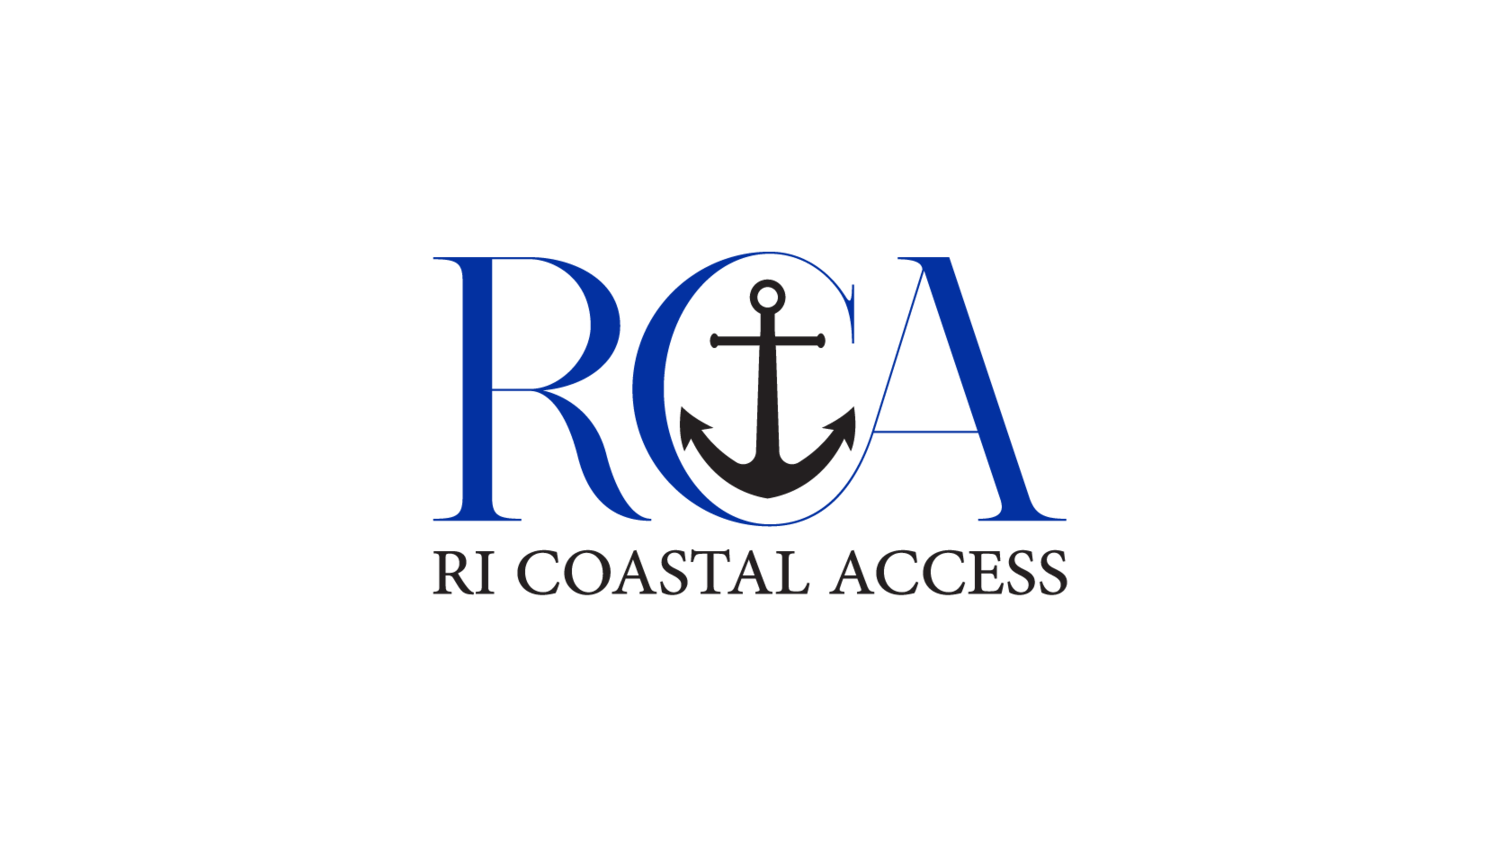 RI Coastal Access